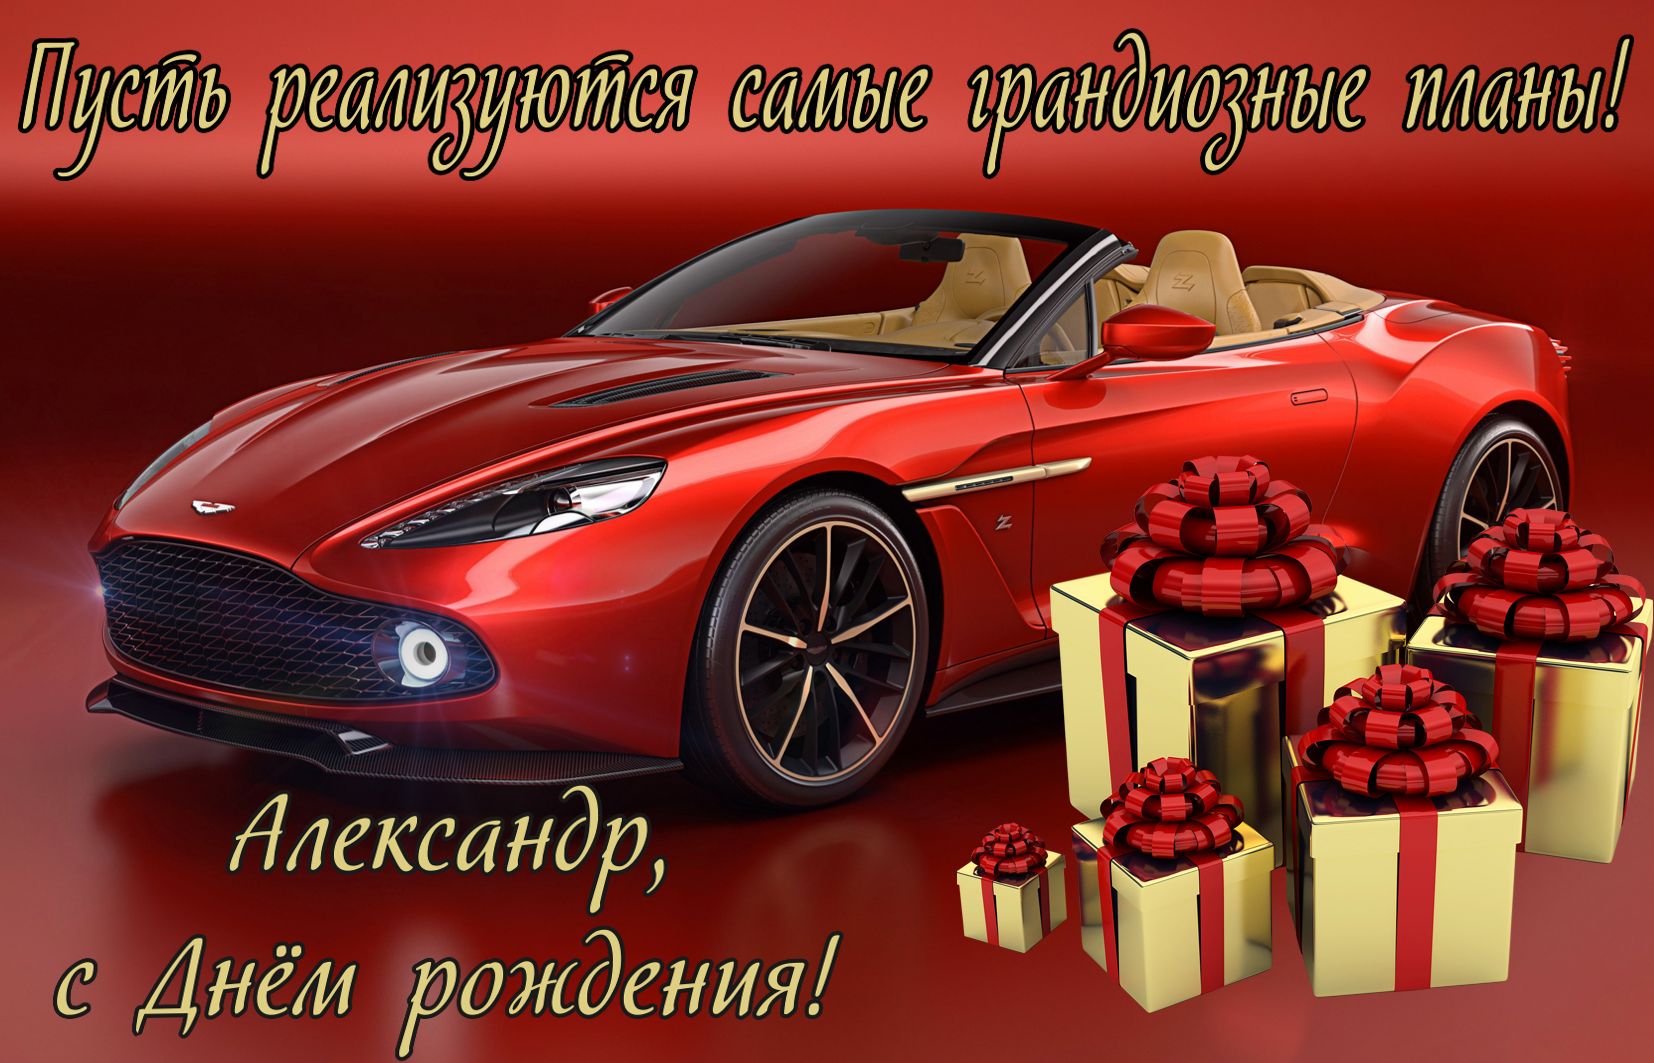 Картинка с машиной и подарками Александру на День рождения